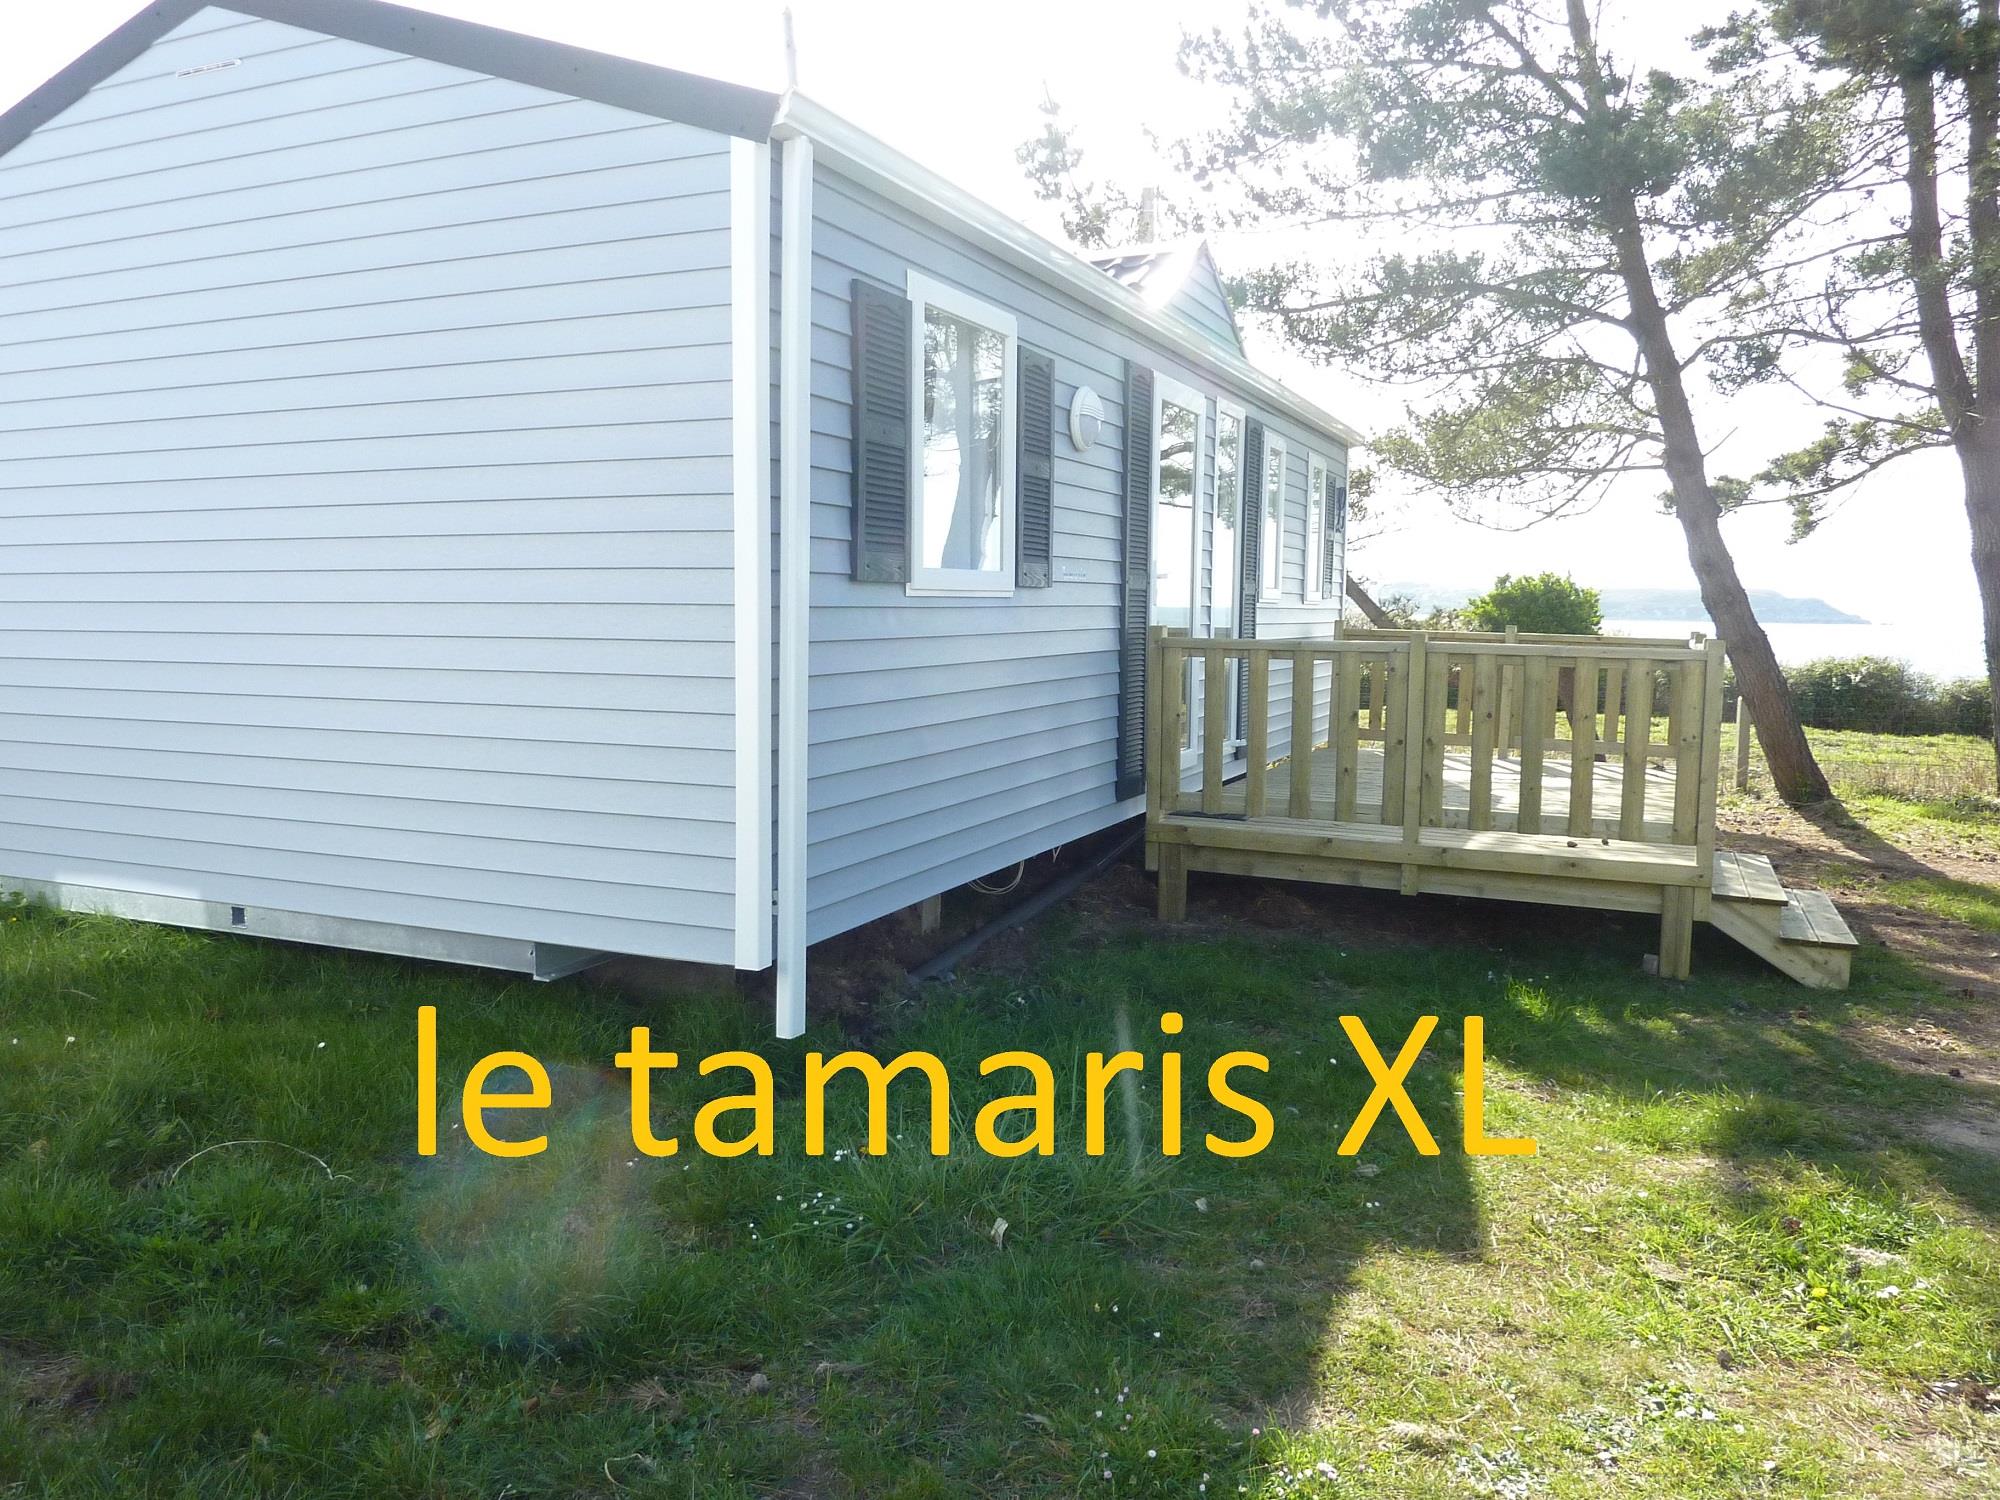 Mobile-home 3 chambres Super Titania ou Tamarys XL avec terrasse vue sur la mer